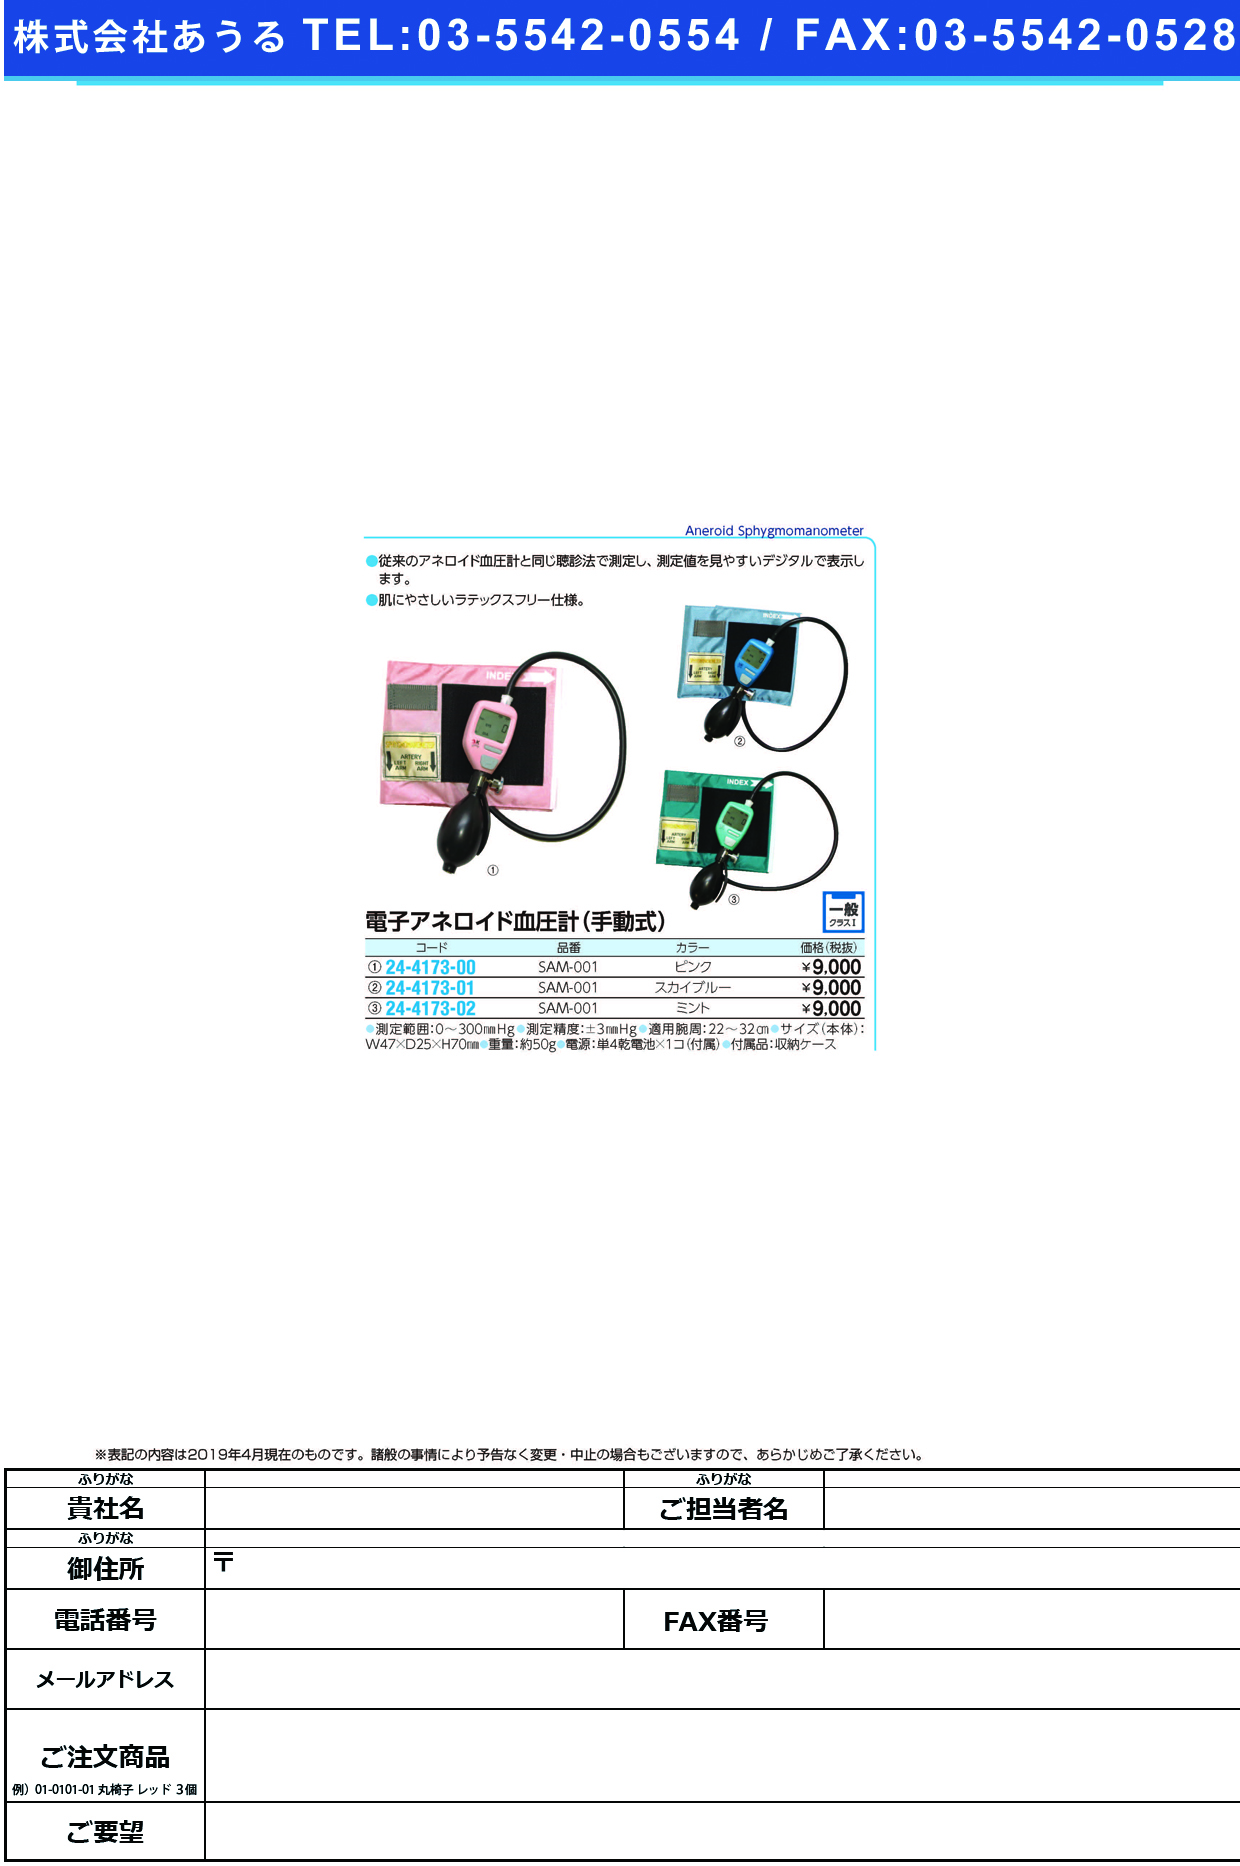 (24-4173-01)電子アネロイド血圧計（手動式） SAM-001(ｽｶｲﾌﾞﾙｰ) ﾃﾞﾝｼｱﾈﾛｲﾄﾞｹﾂｱﾂｹｲｼｭﾄﾞ【1台単位】【2019年カタログ商品】